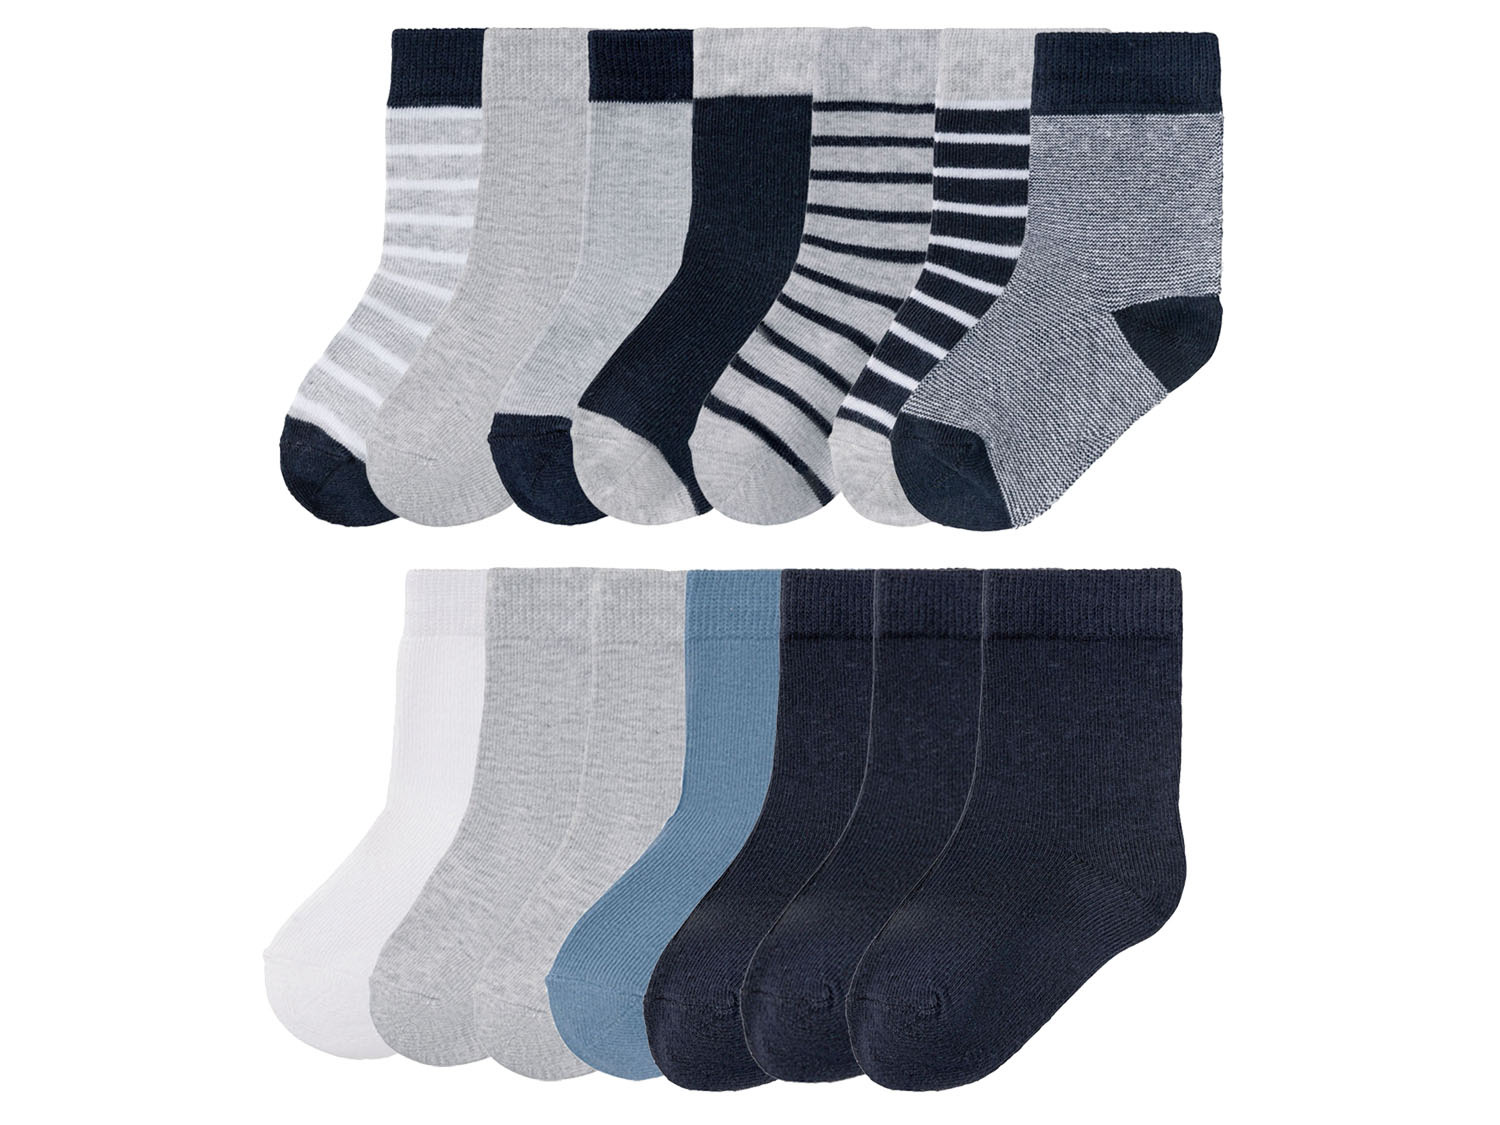 Rubber Knooppunt Natuur 7 paar jongens sokken online kopen | LIDL